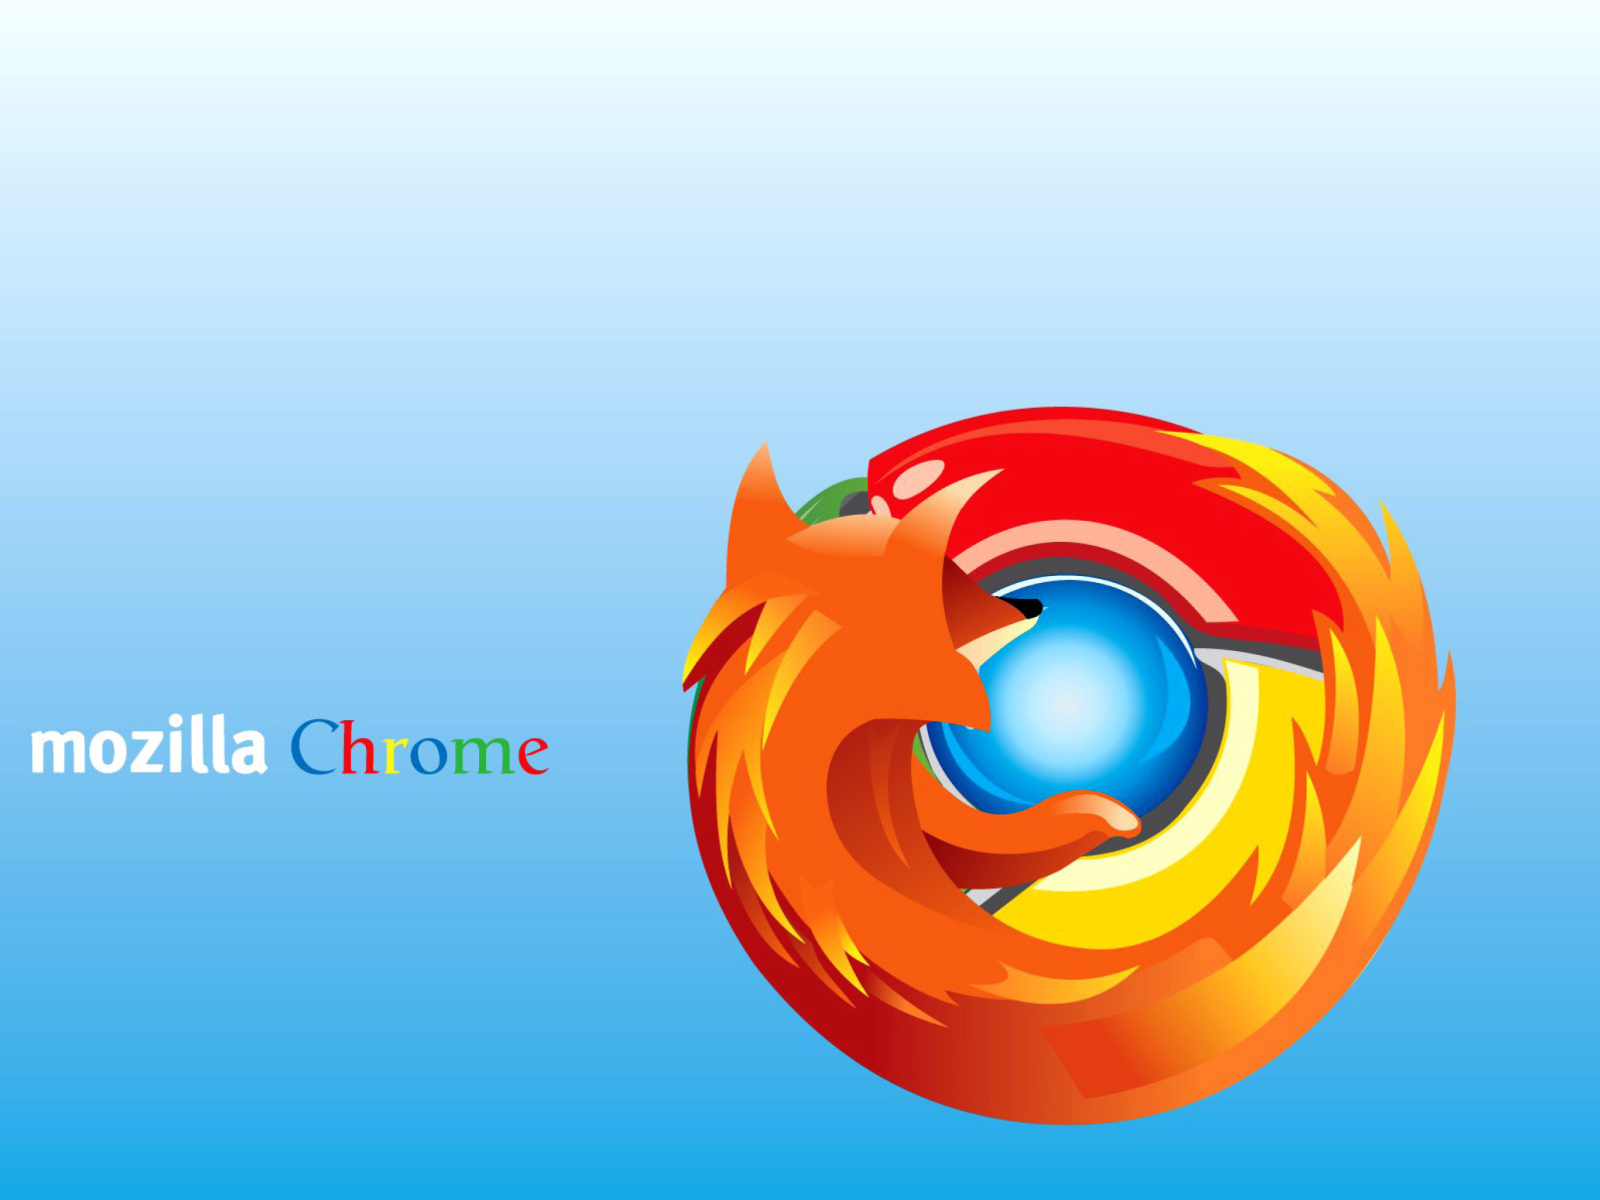 Mozilla Chrome wallpaper 1600x1200